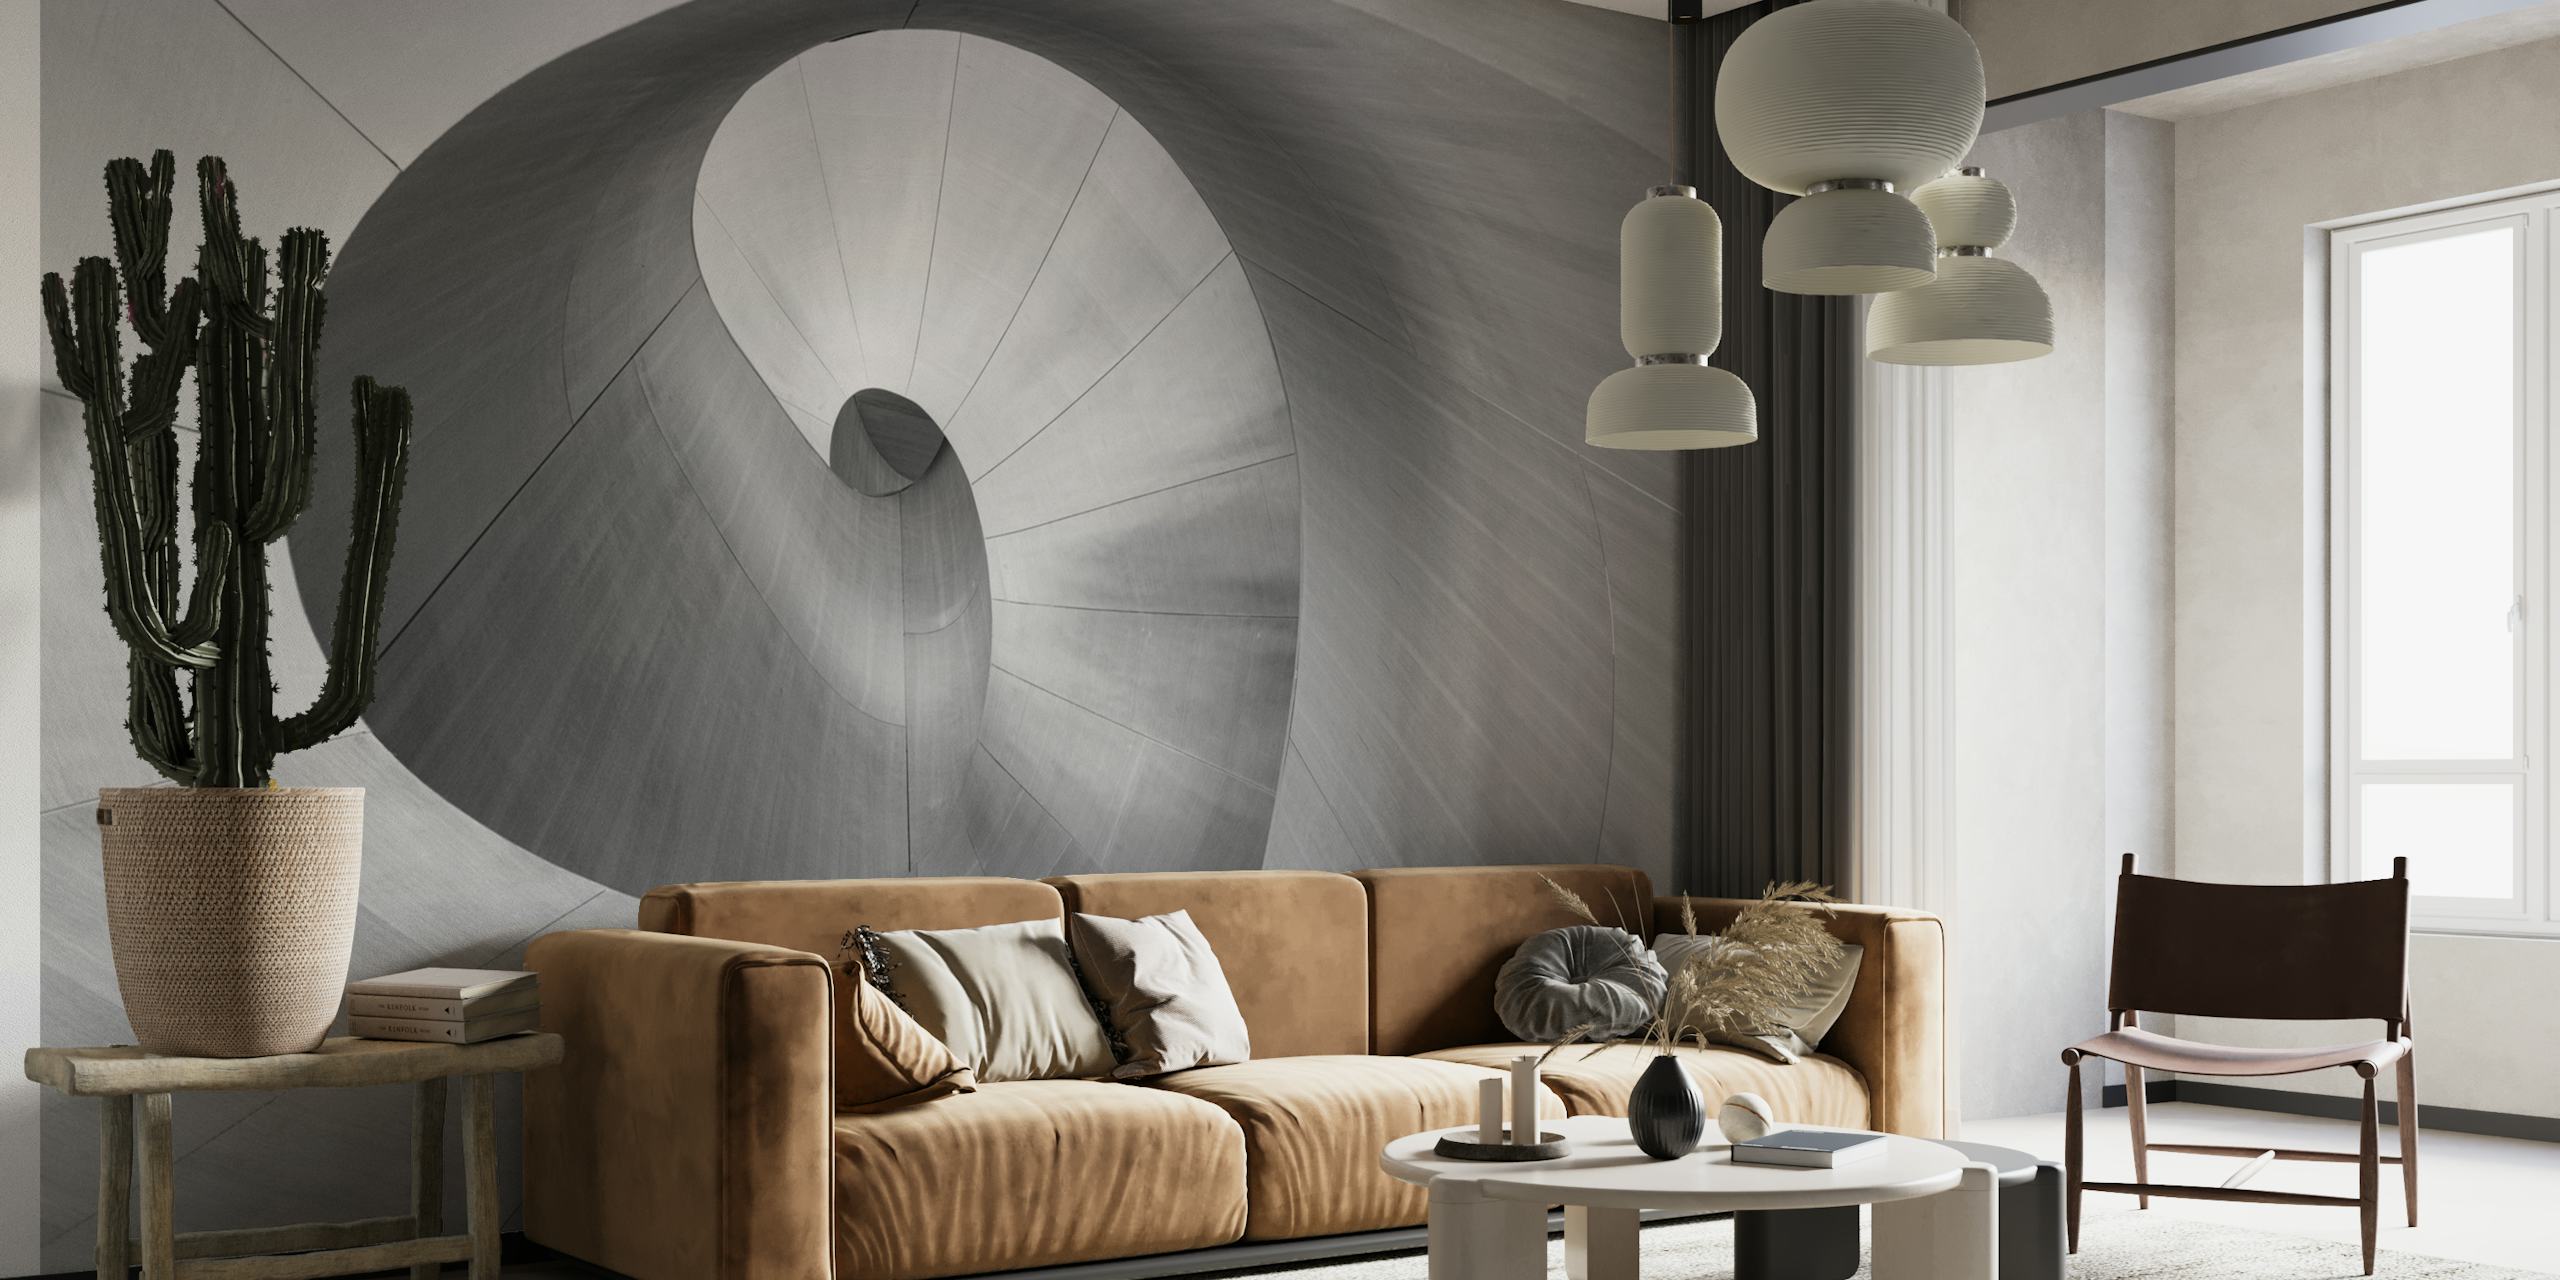 Peinture murale abstraite en noir et blanc présentant des courbes en spirale